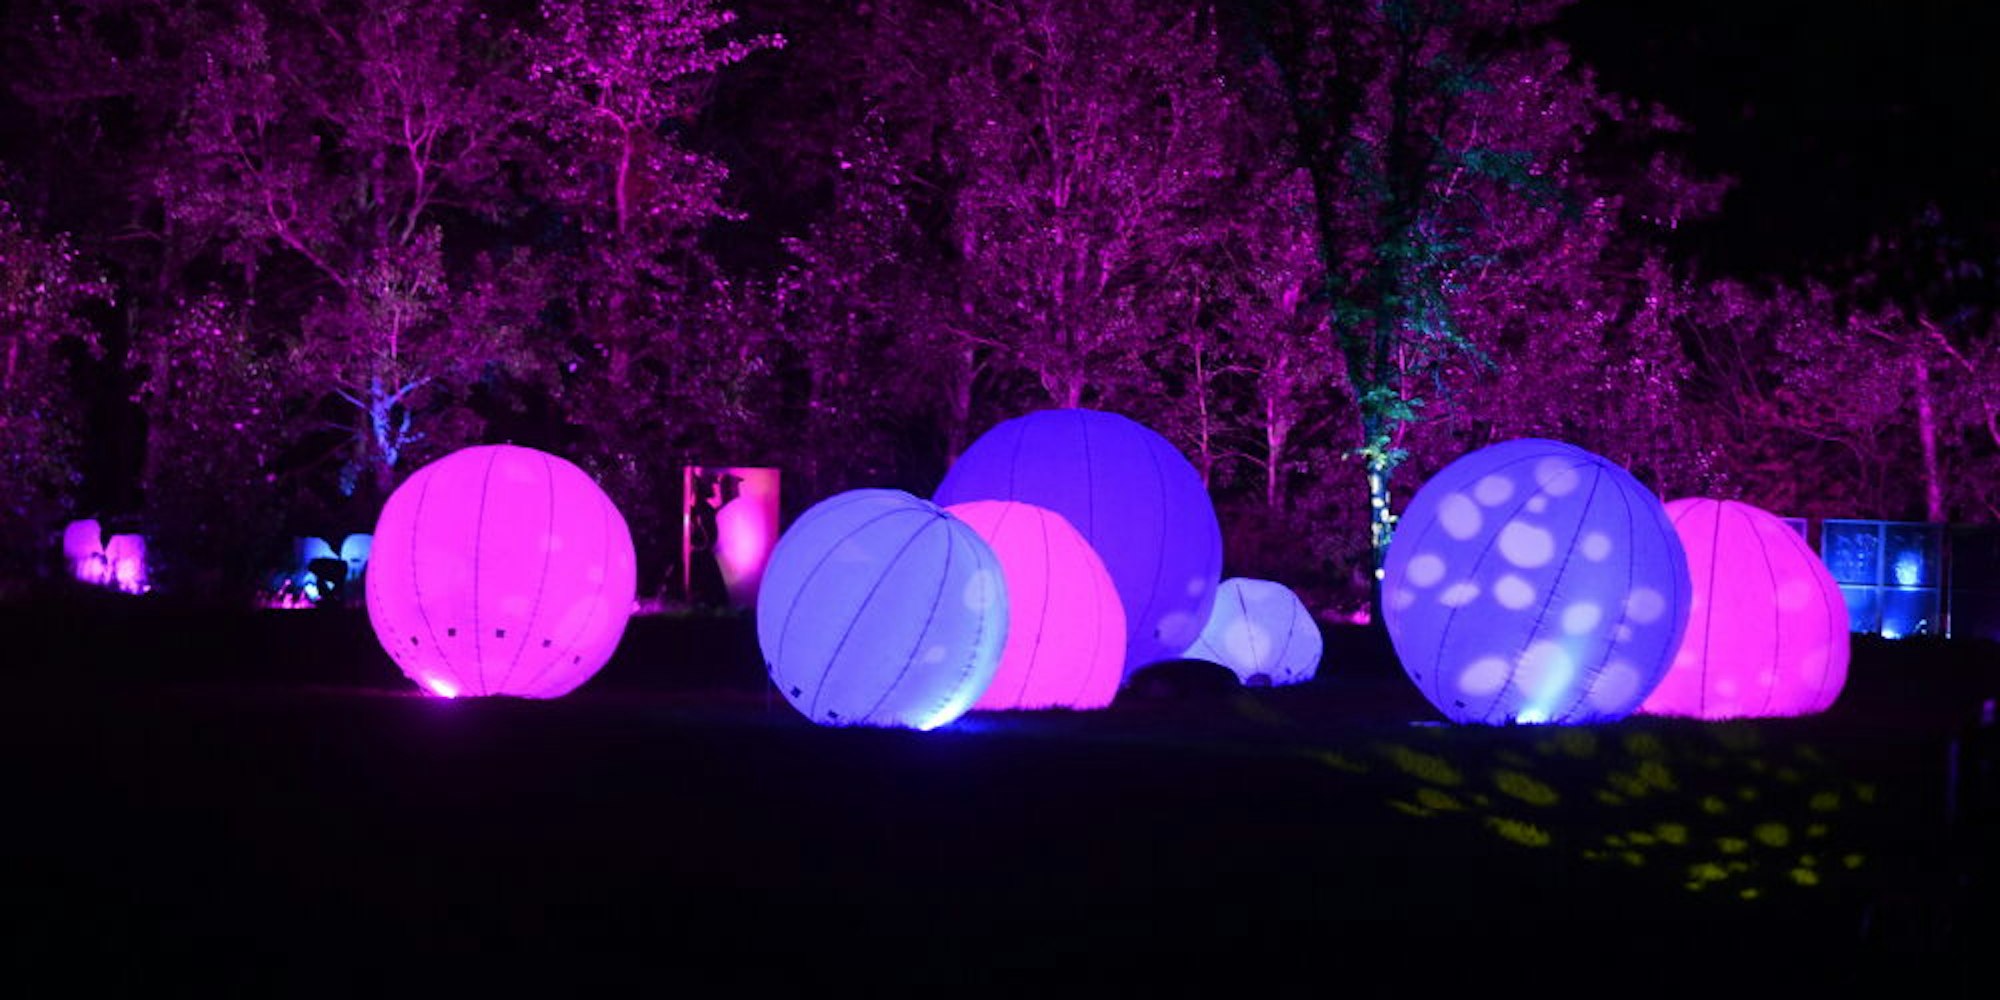 Diverse Lichtshows mit unterschiedlichen beleuchteten Objekten können sich die Gäste anschauen.